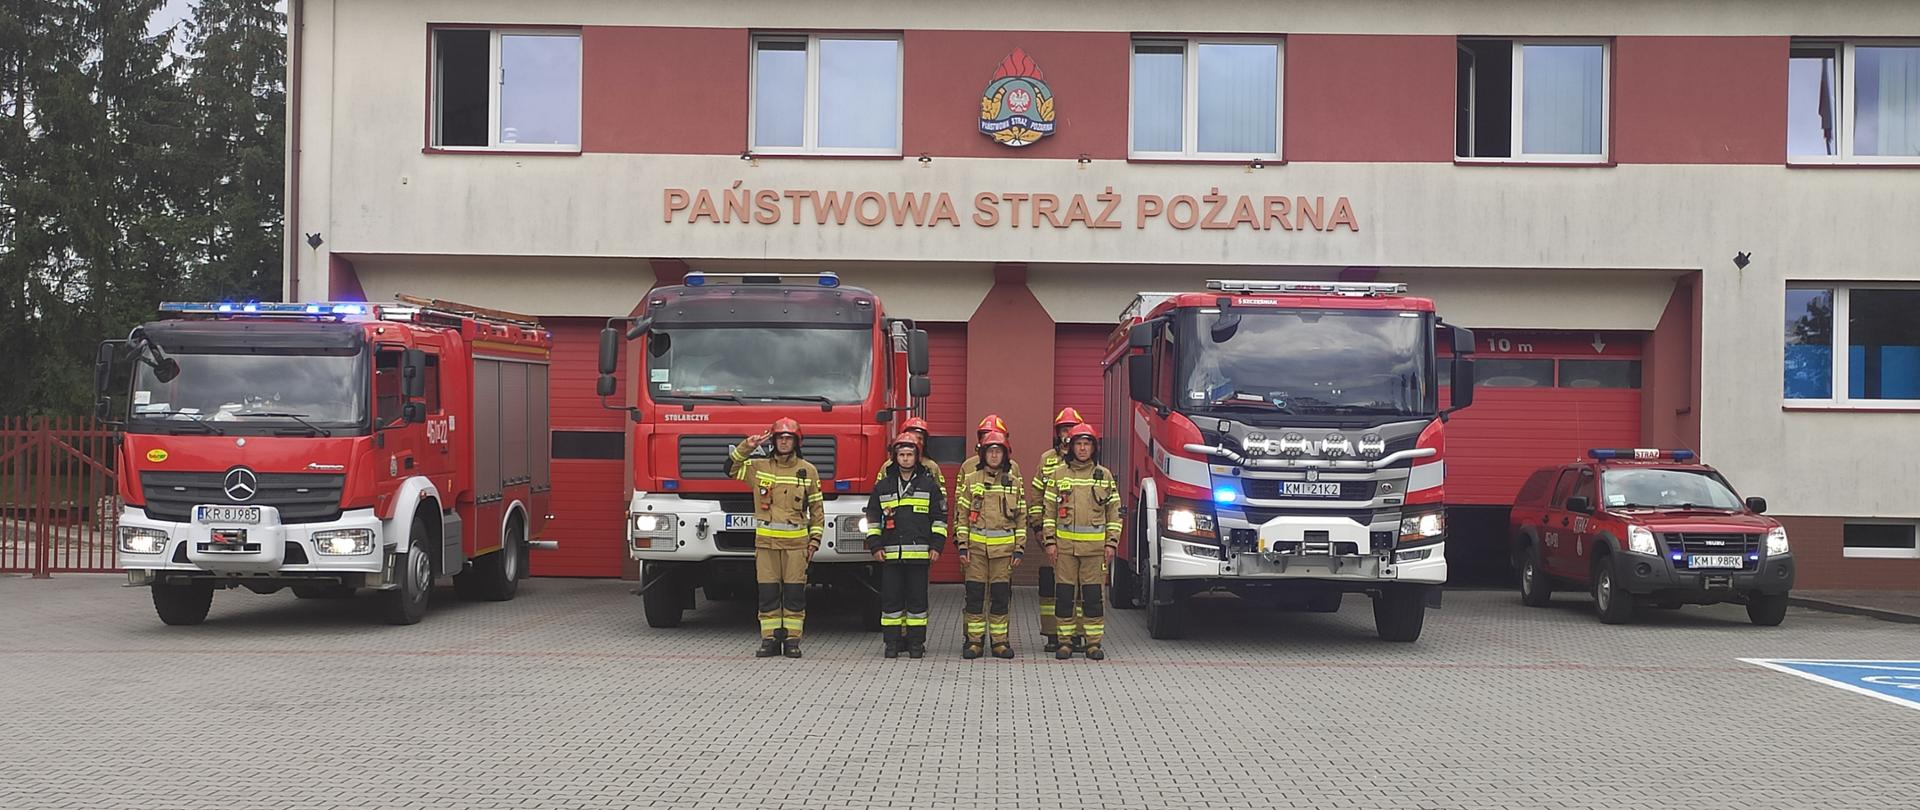 Na zdjęciu widoczni strażacy oddający hołd Powstańcom Warszawskim, w na tle samochodów pożarniczych oraz budynku JRG.